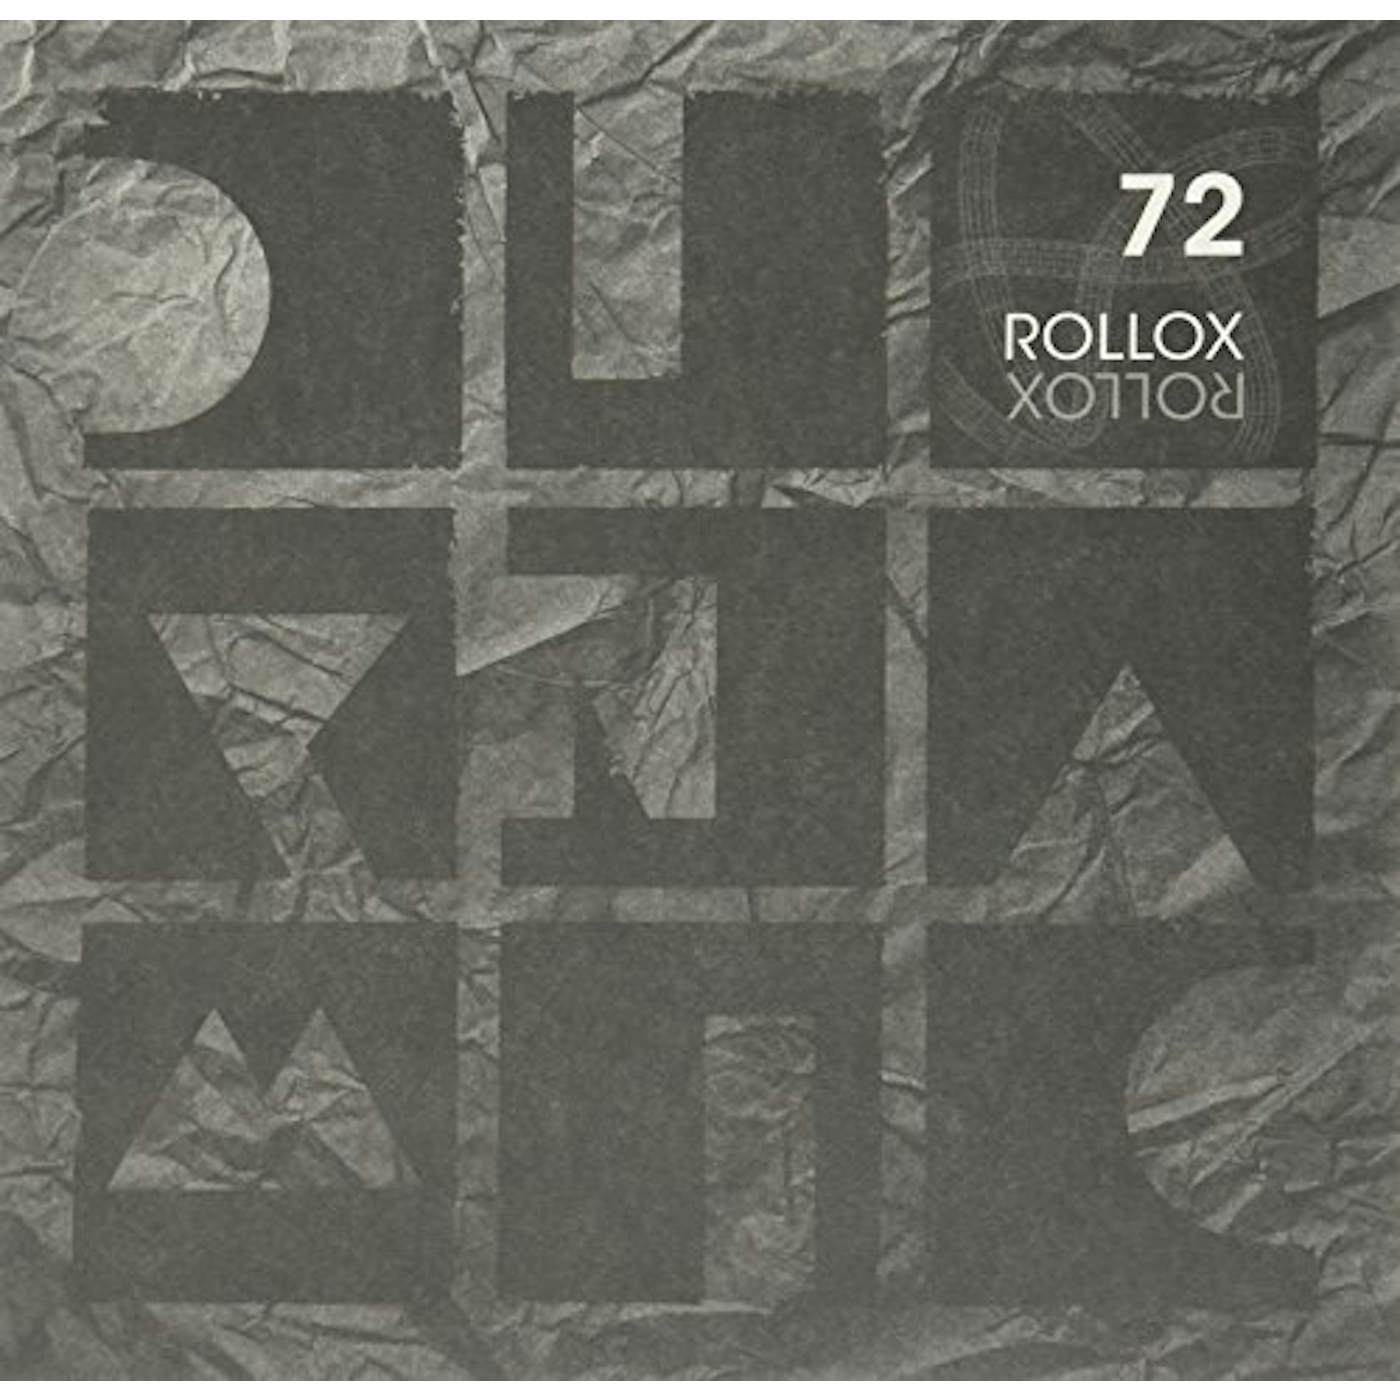 Adriatique Rollox Vinyl Record